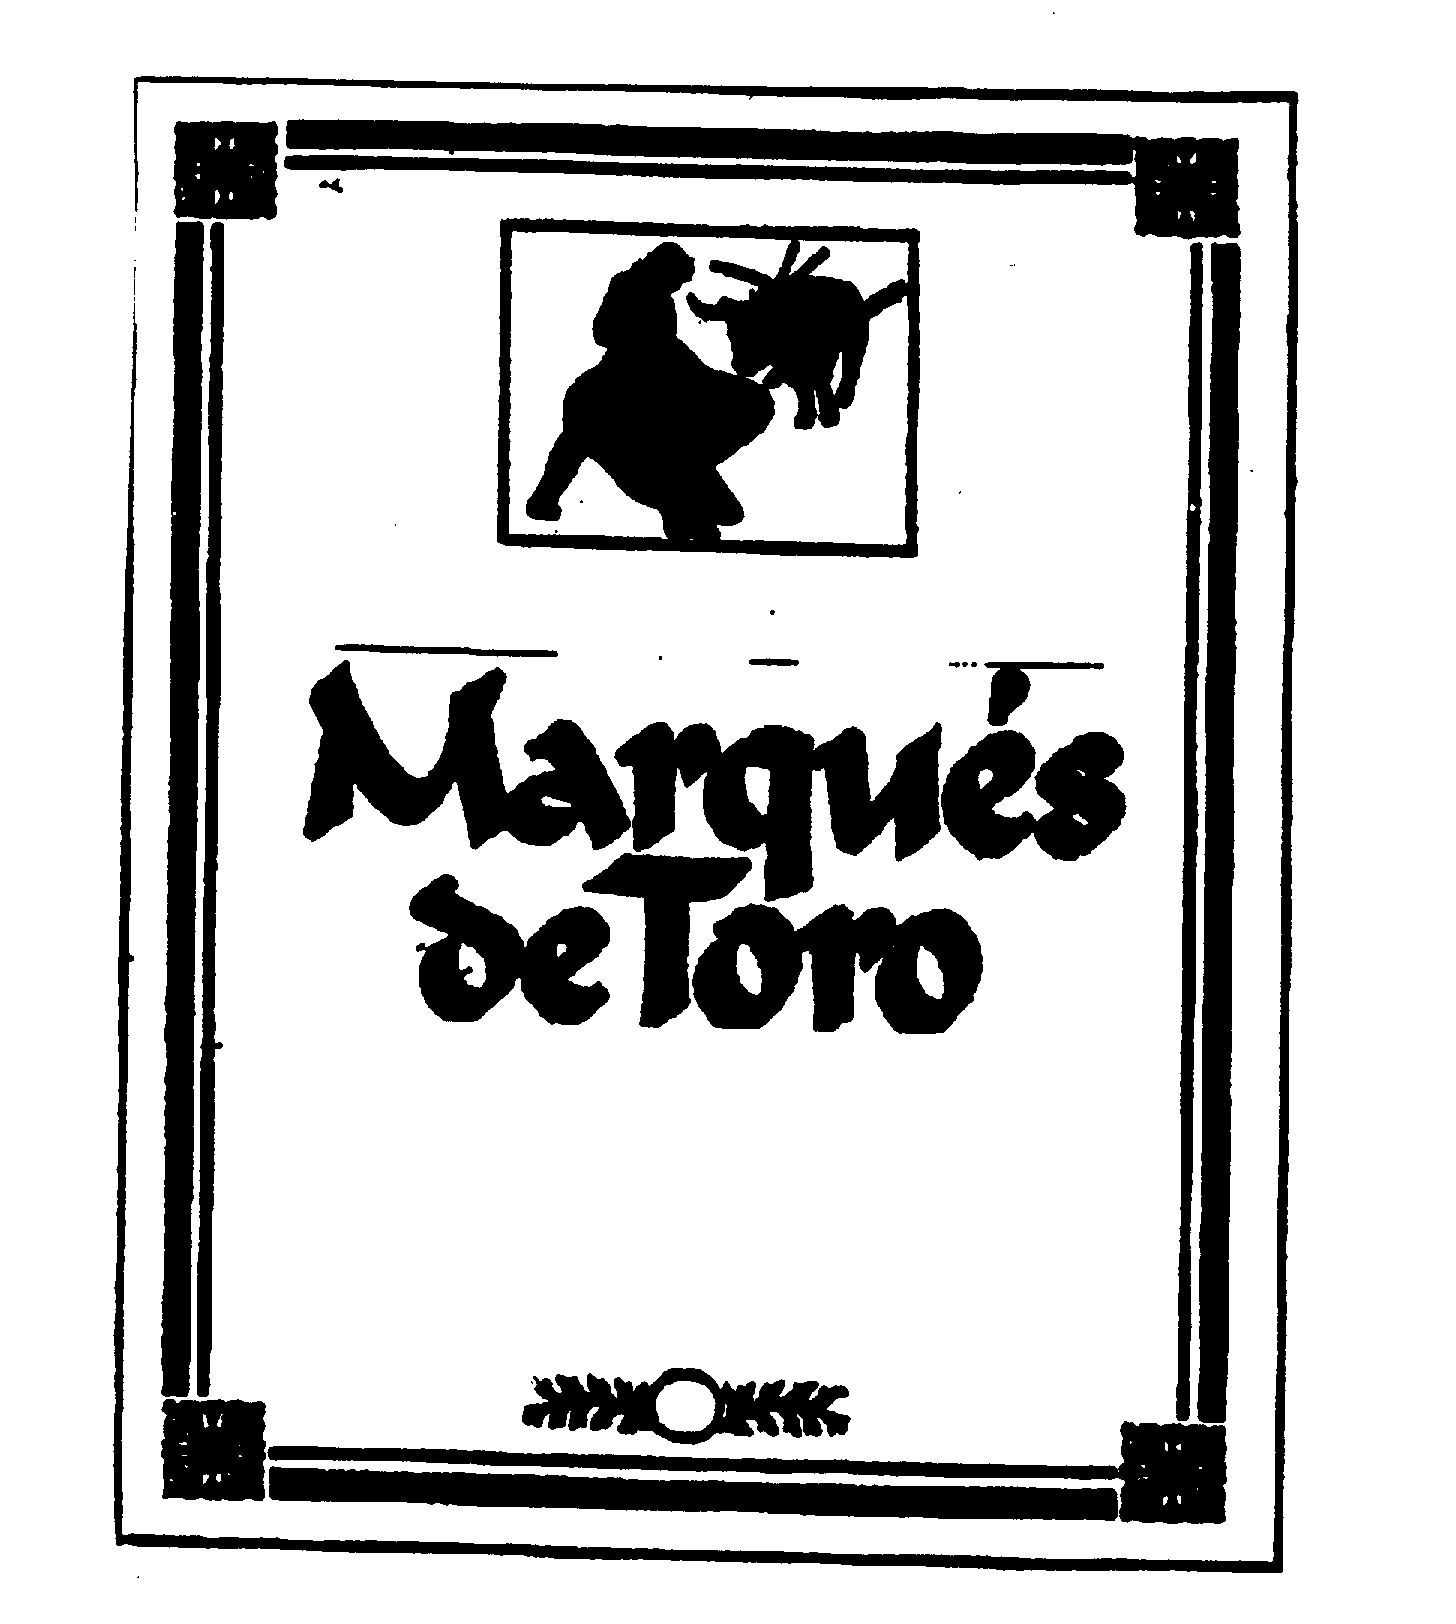 Trademark Logo MARQUES DE TORO